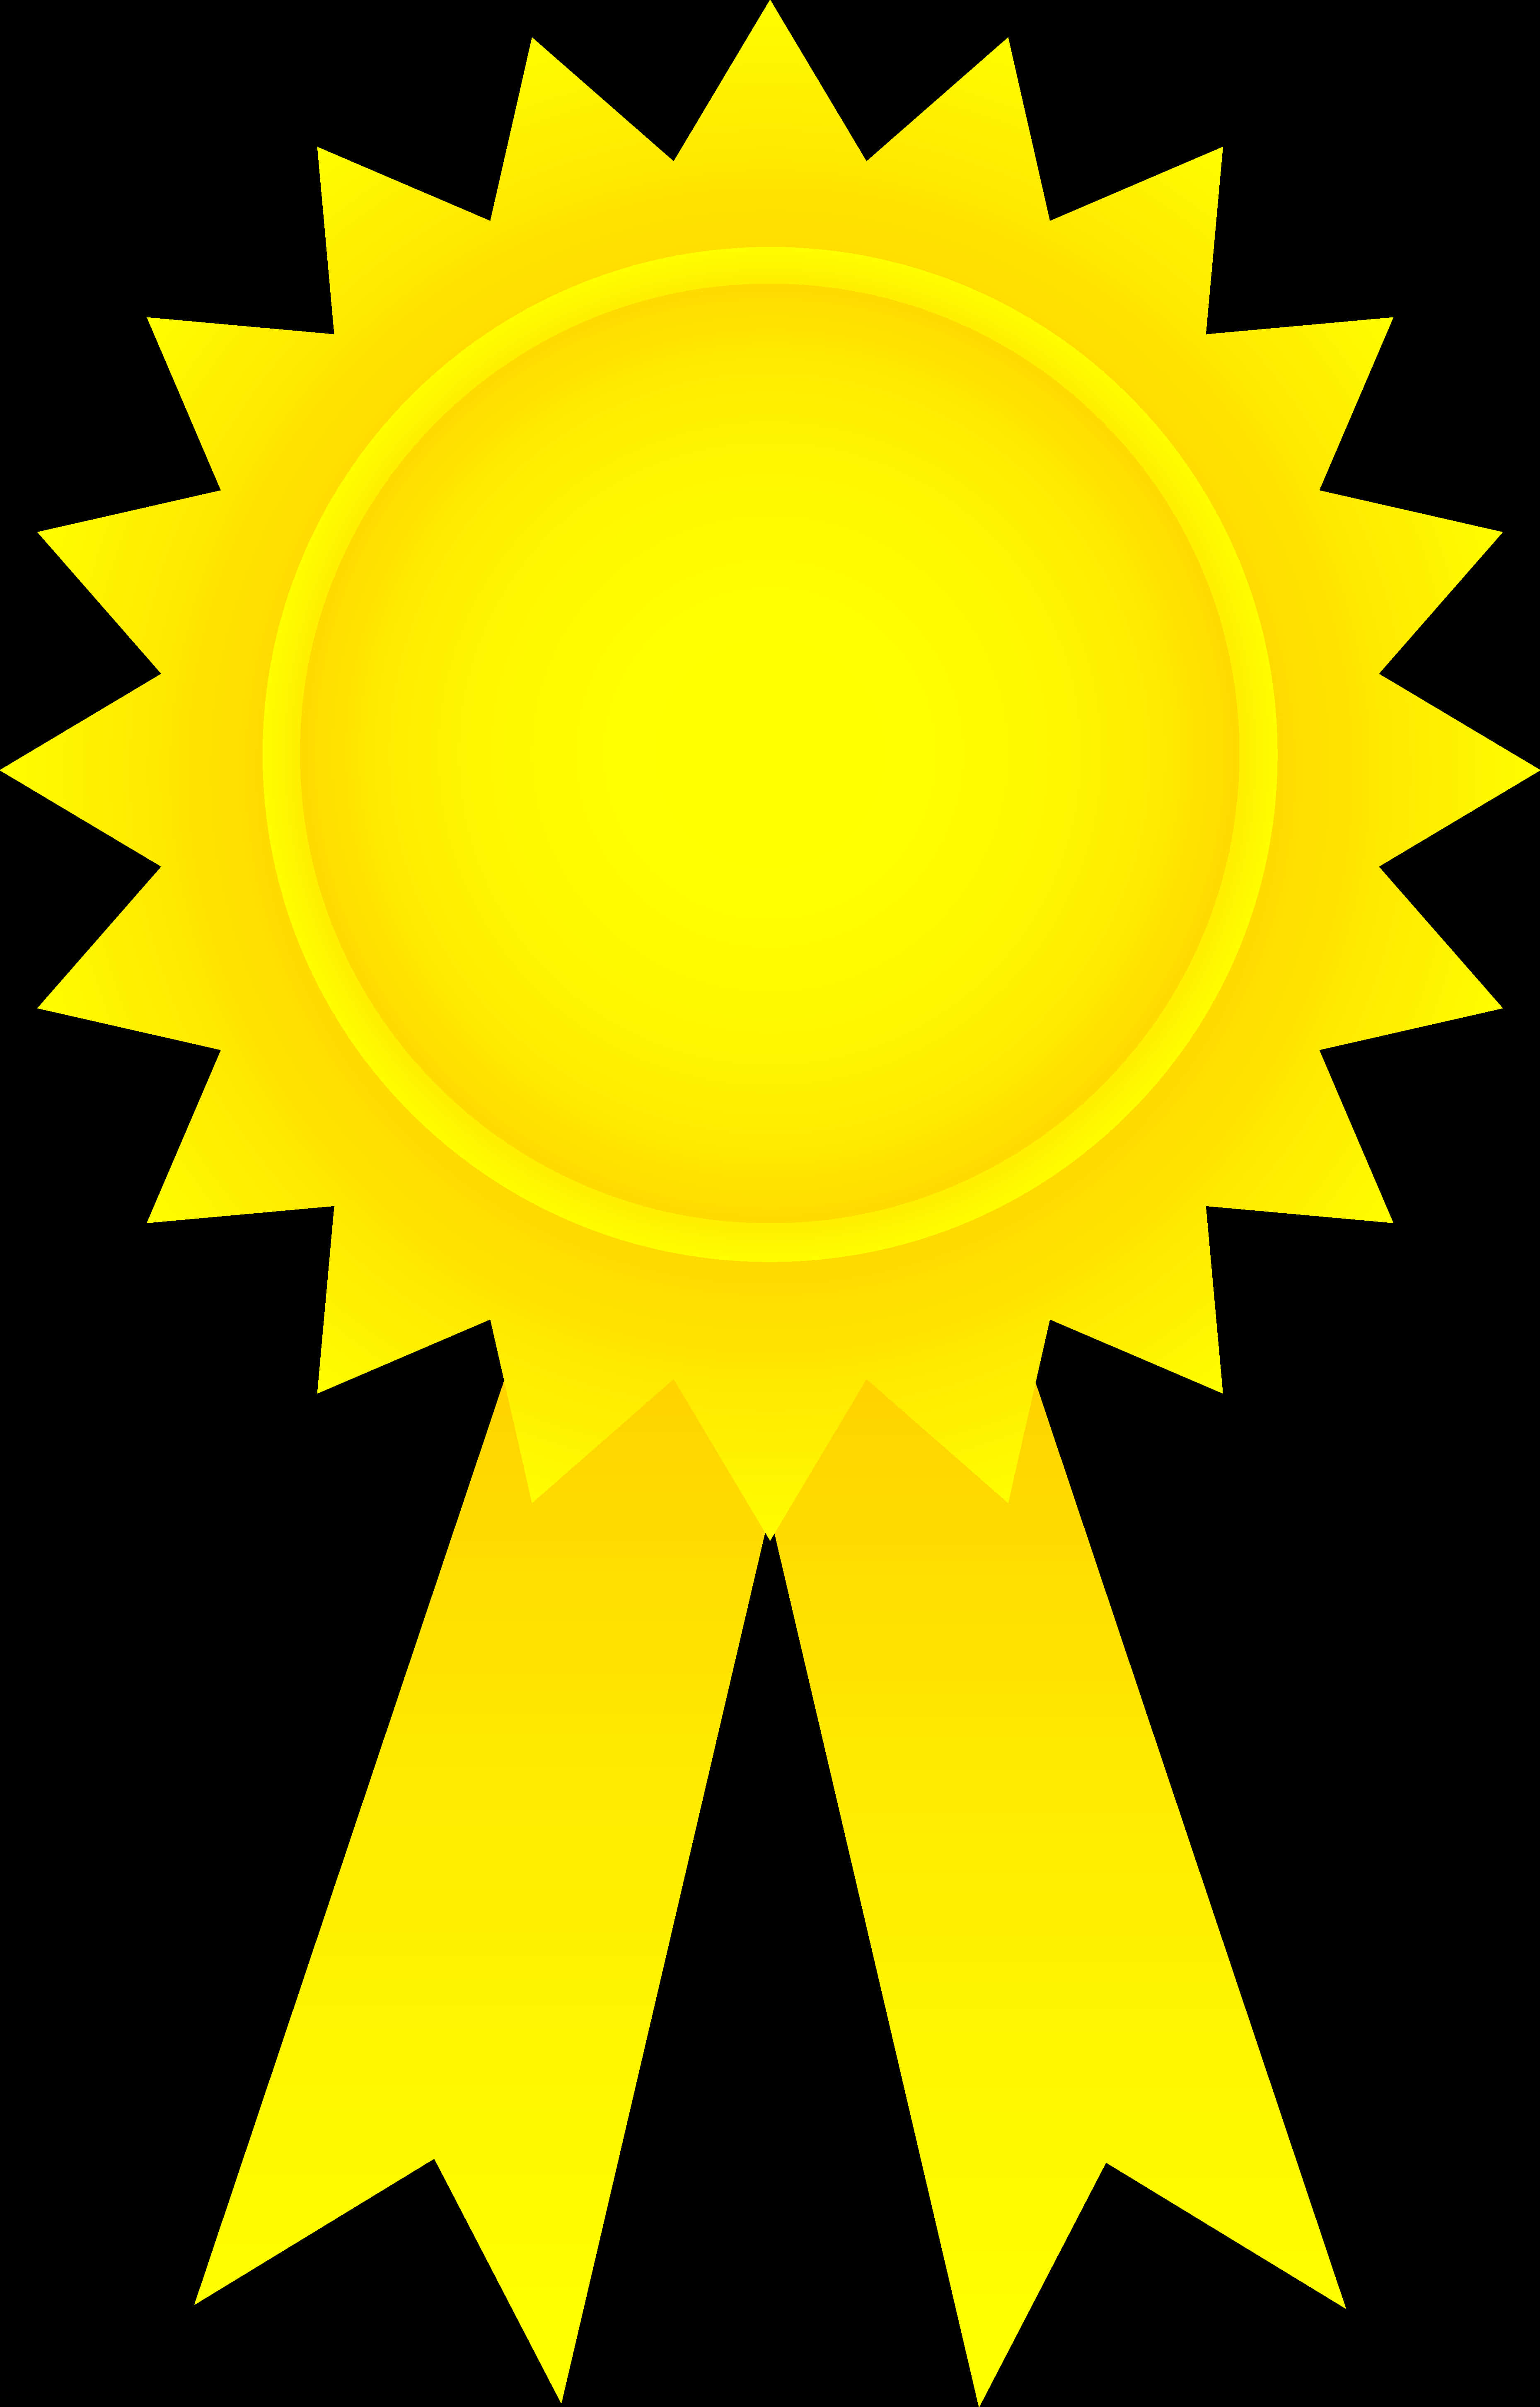 Golden Award Ribbon Graphic PNG image